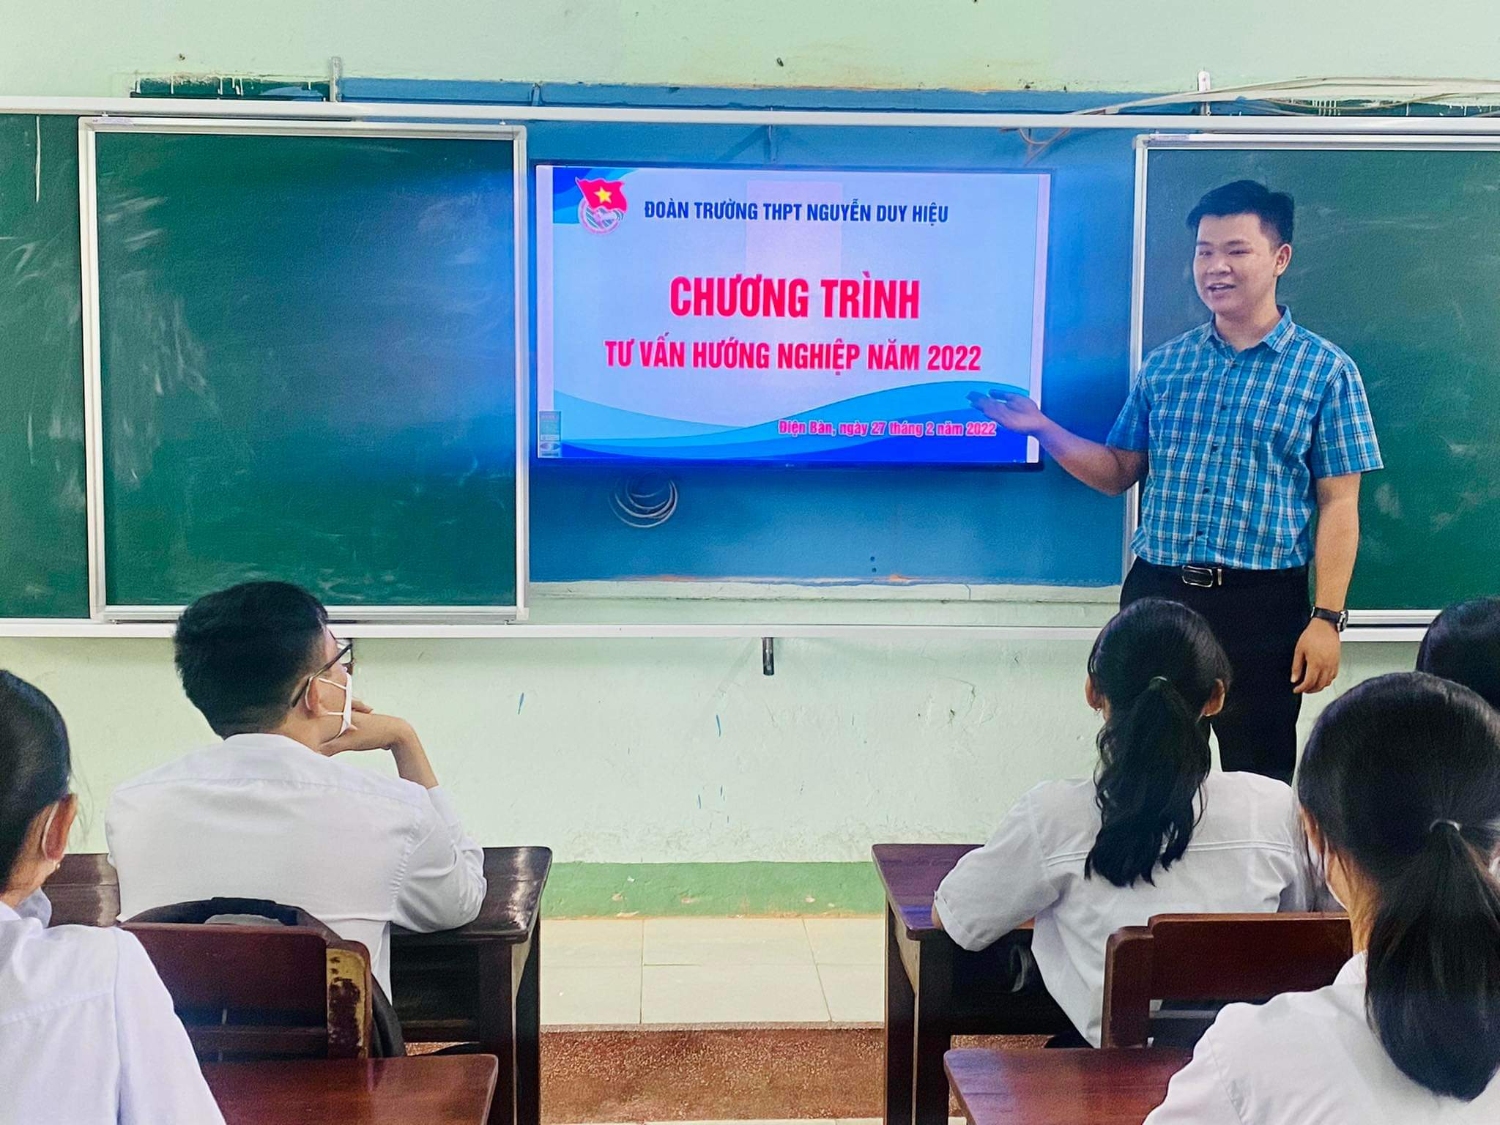 Đoàn trường THPT Nguyễn Duy Hiệu tư vấn hướng nghiệp năm 2022